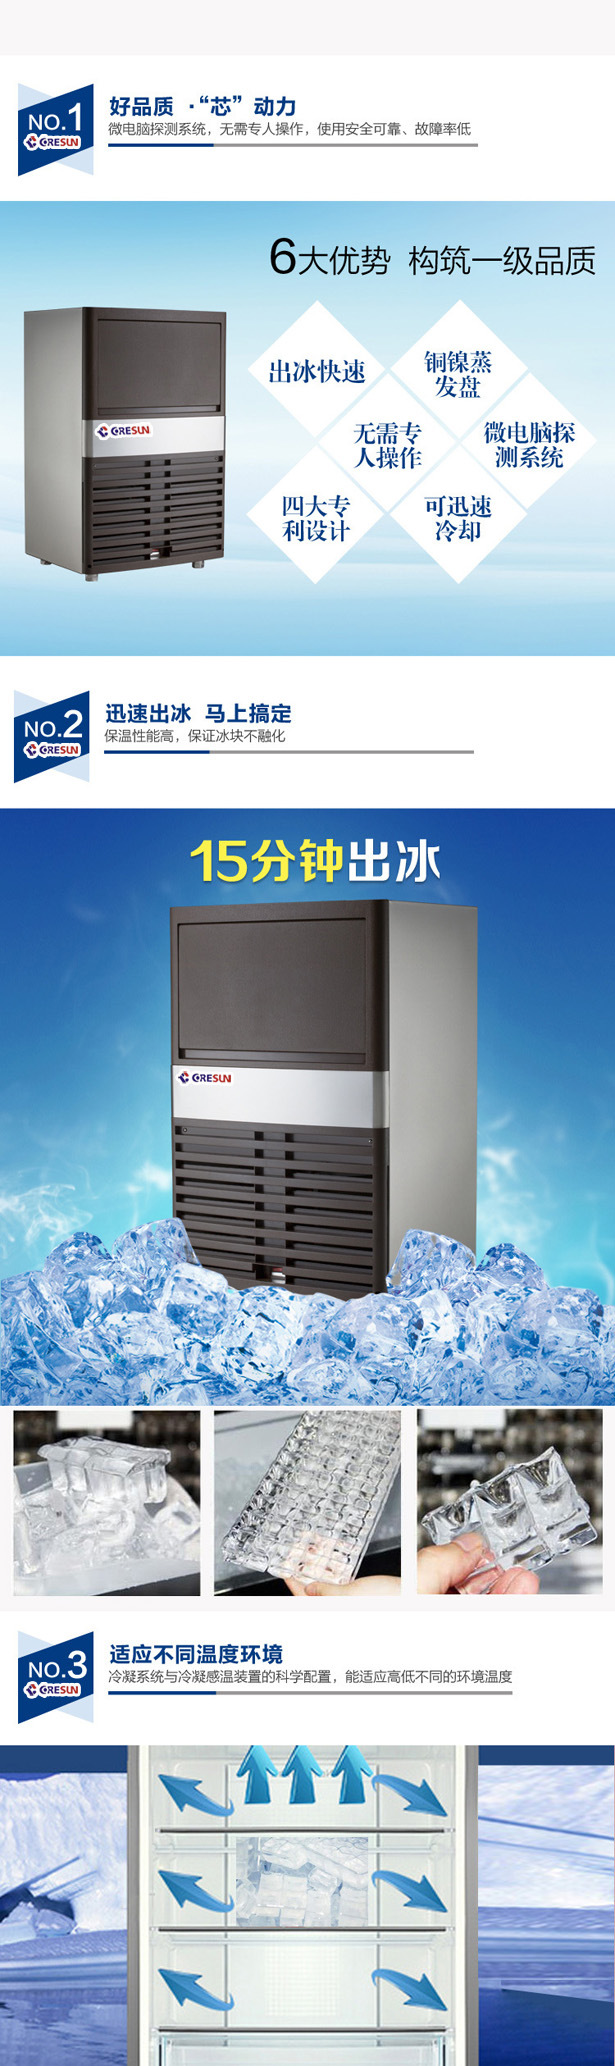 海产保鲜工业降温用制冰机商用多功能制冰机SK-120P